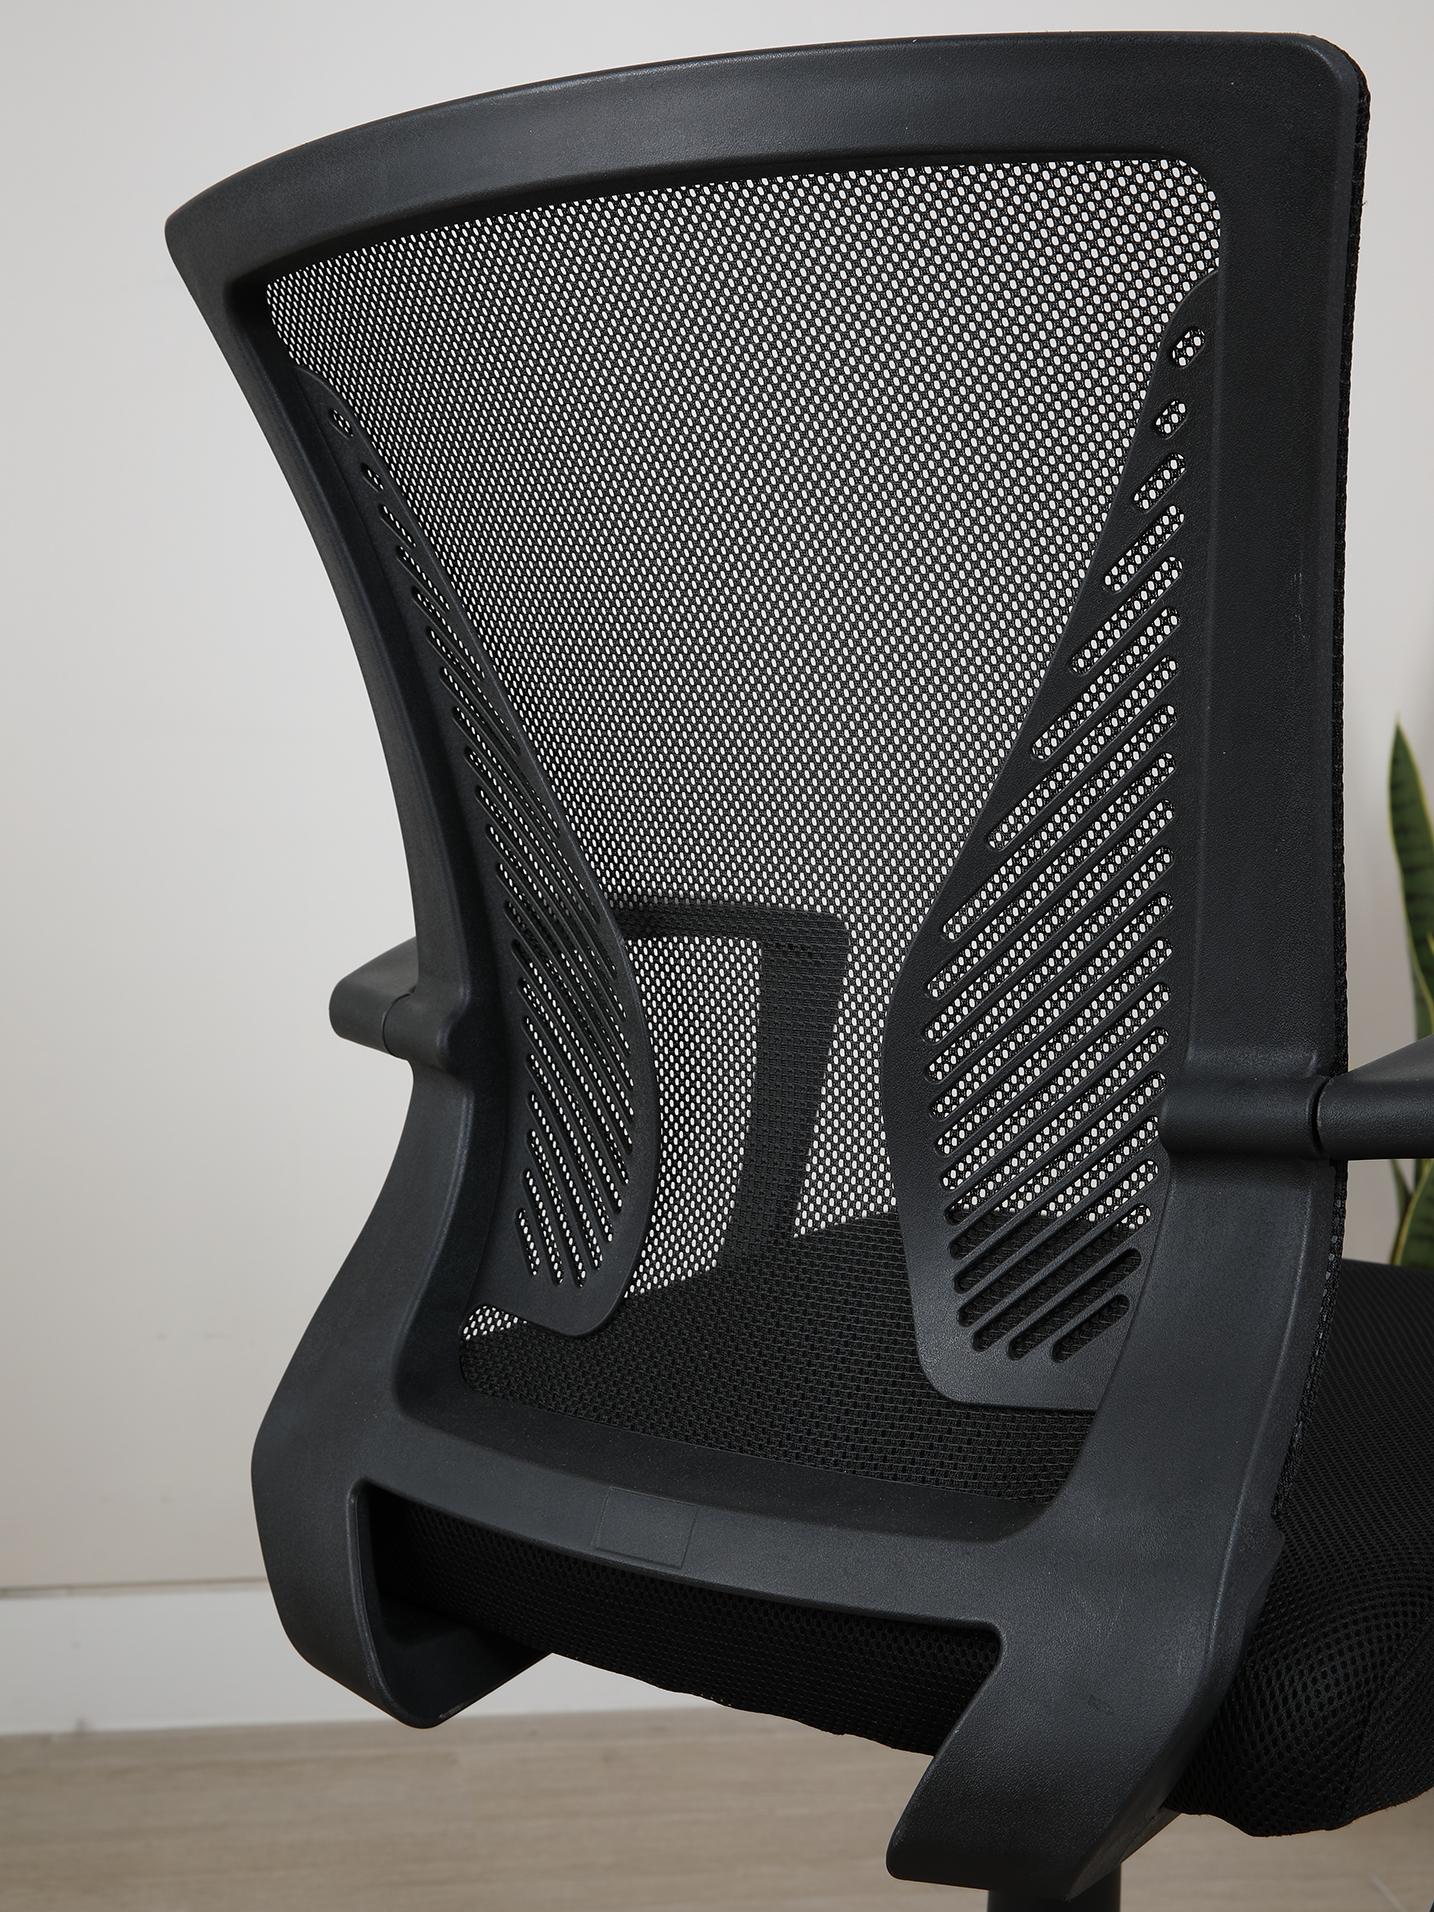 เก้าอี้สำนักงาน รุ่นเด็กซ์เตอร์ - สีดำ - เก้าอี้ออฟฟิศ เก้าอี้โต๊ะทำงาน พนักพิงผ้าตาข่าย